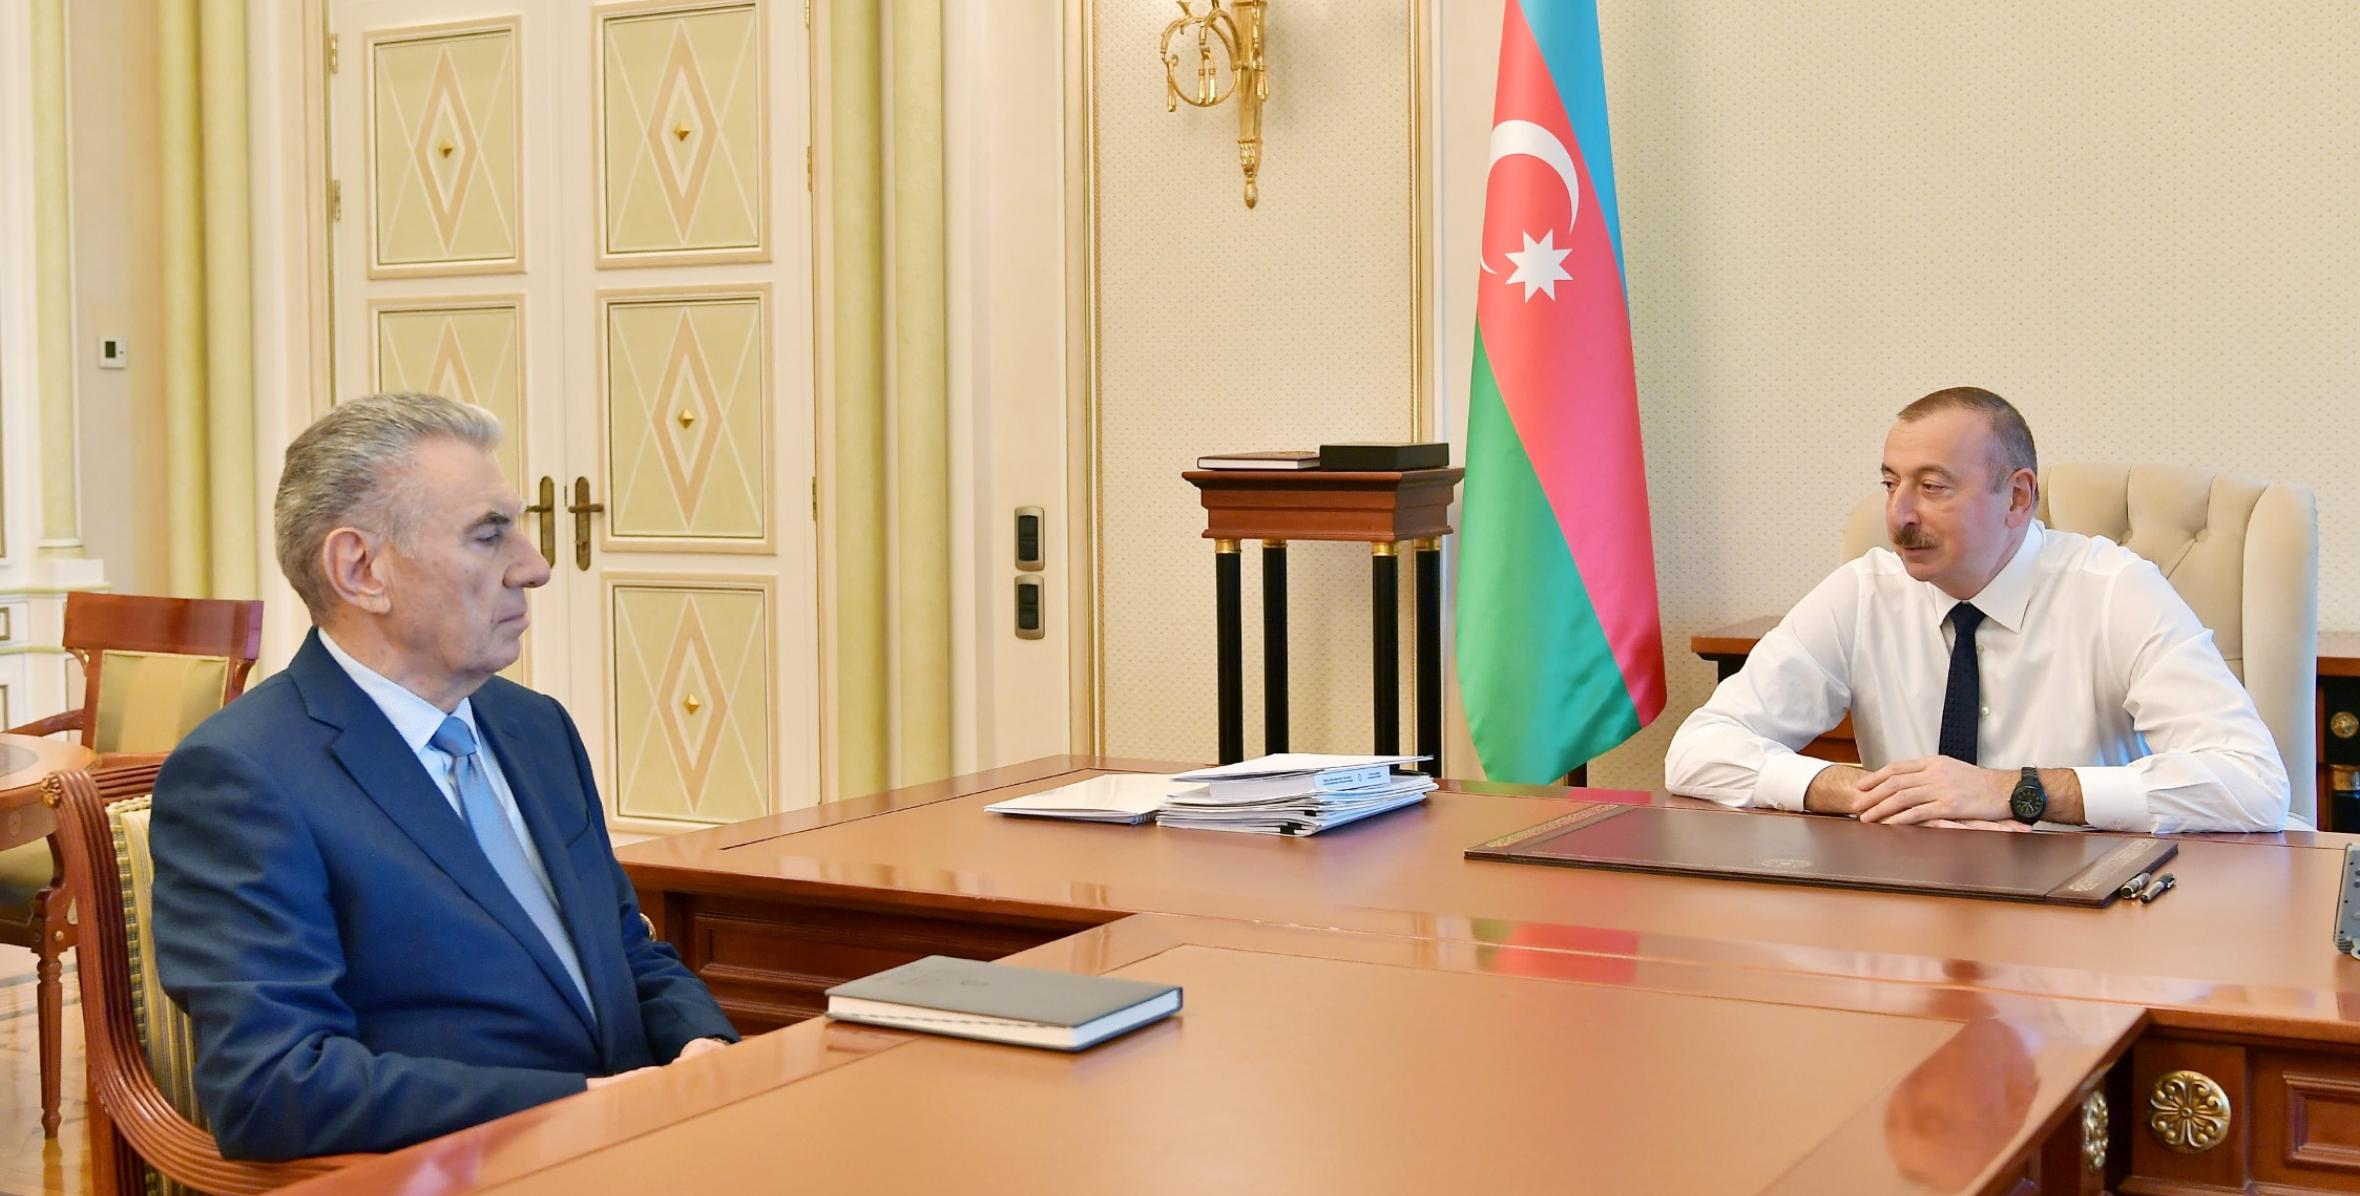 Ильхам Алиев принял заместителя премьер-министра Али Гасанова в связи с поданным им заявлением об освобождении от должности